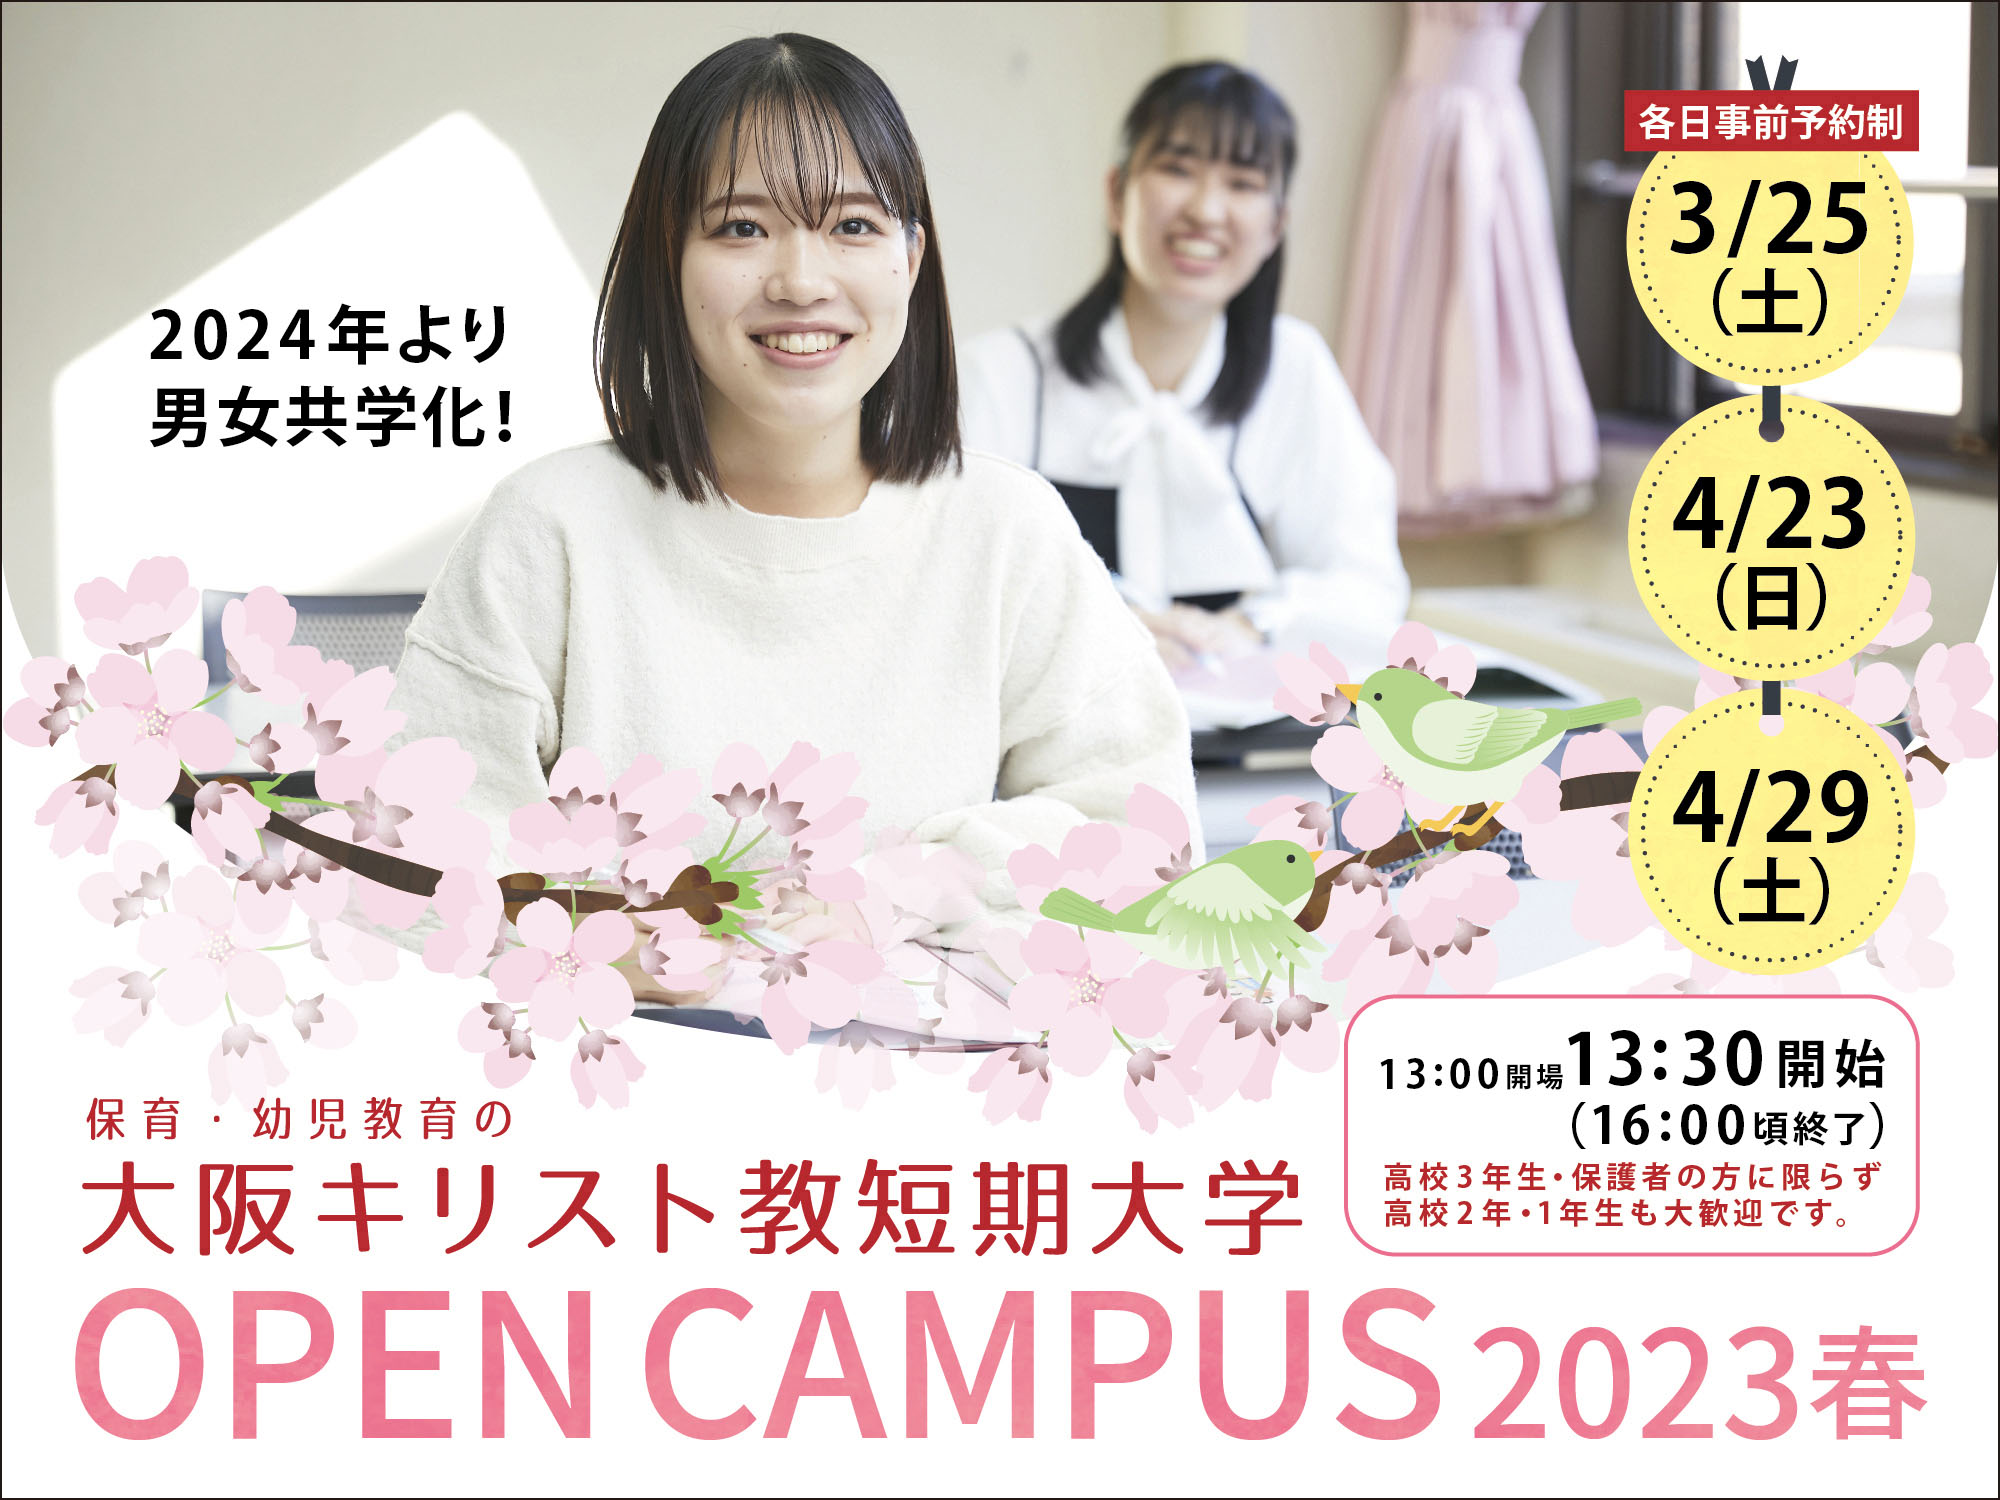 大阪キリスト教短期大学 OPEN CAMPUS